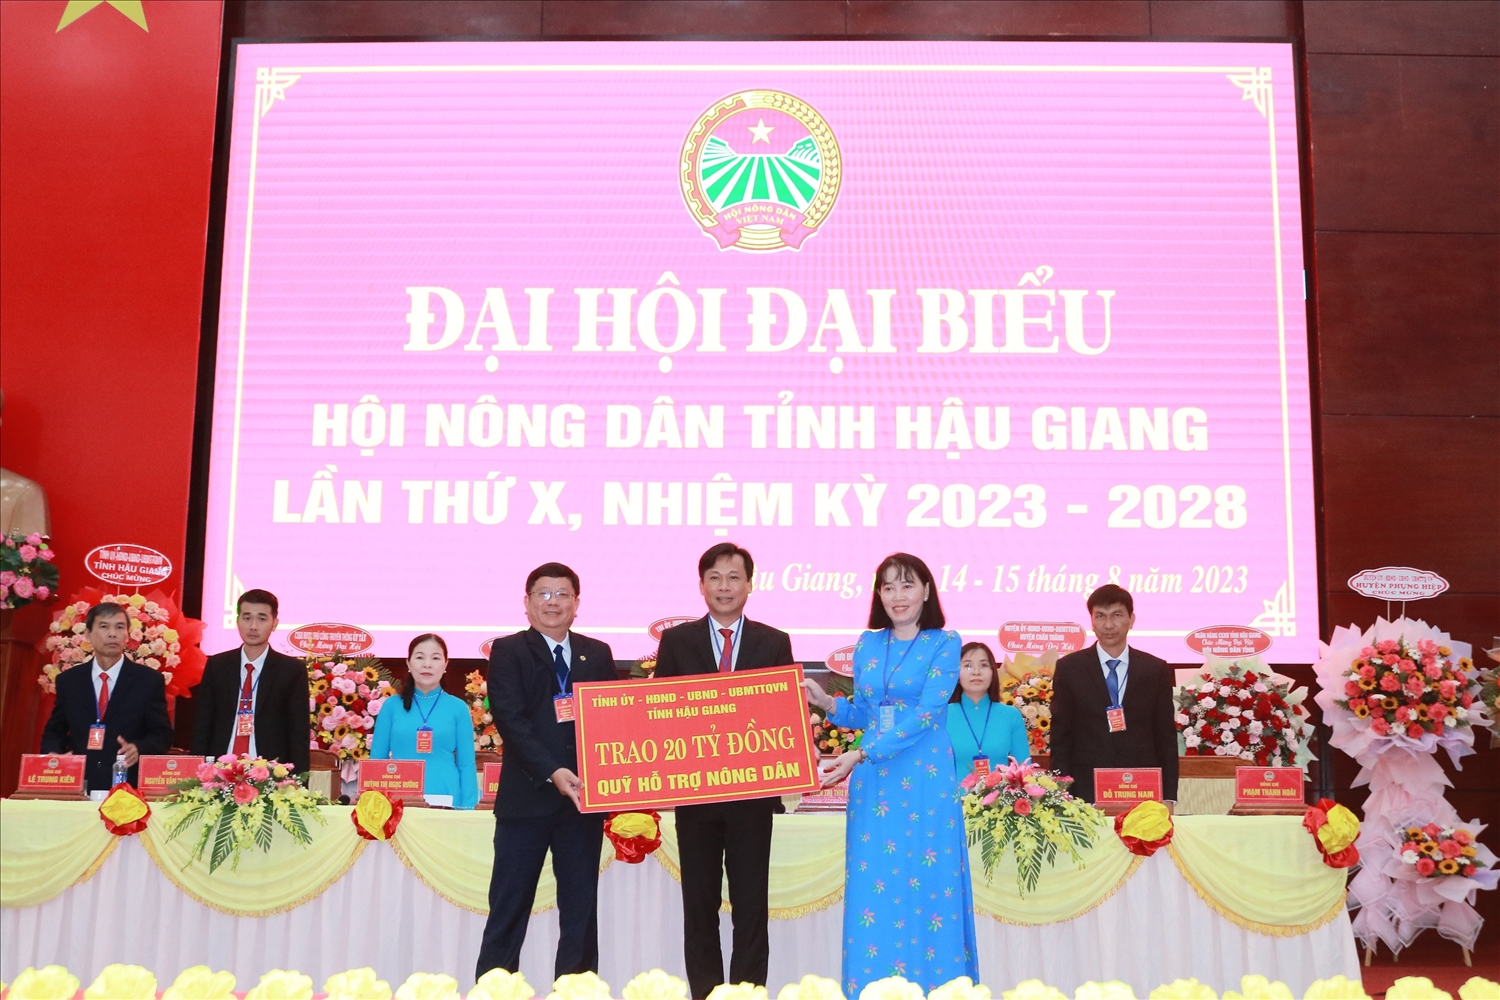 Bà Hồ Thu Ánh - Phó Chủ tịch UBND tỉnh trao bảng tượng trưng quỹ hỗ trợ nông dân cho đại diện lãnh đạo Hội Nông dân tỉnh Hậu Giang 